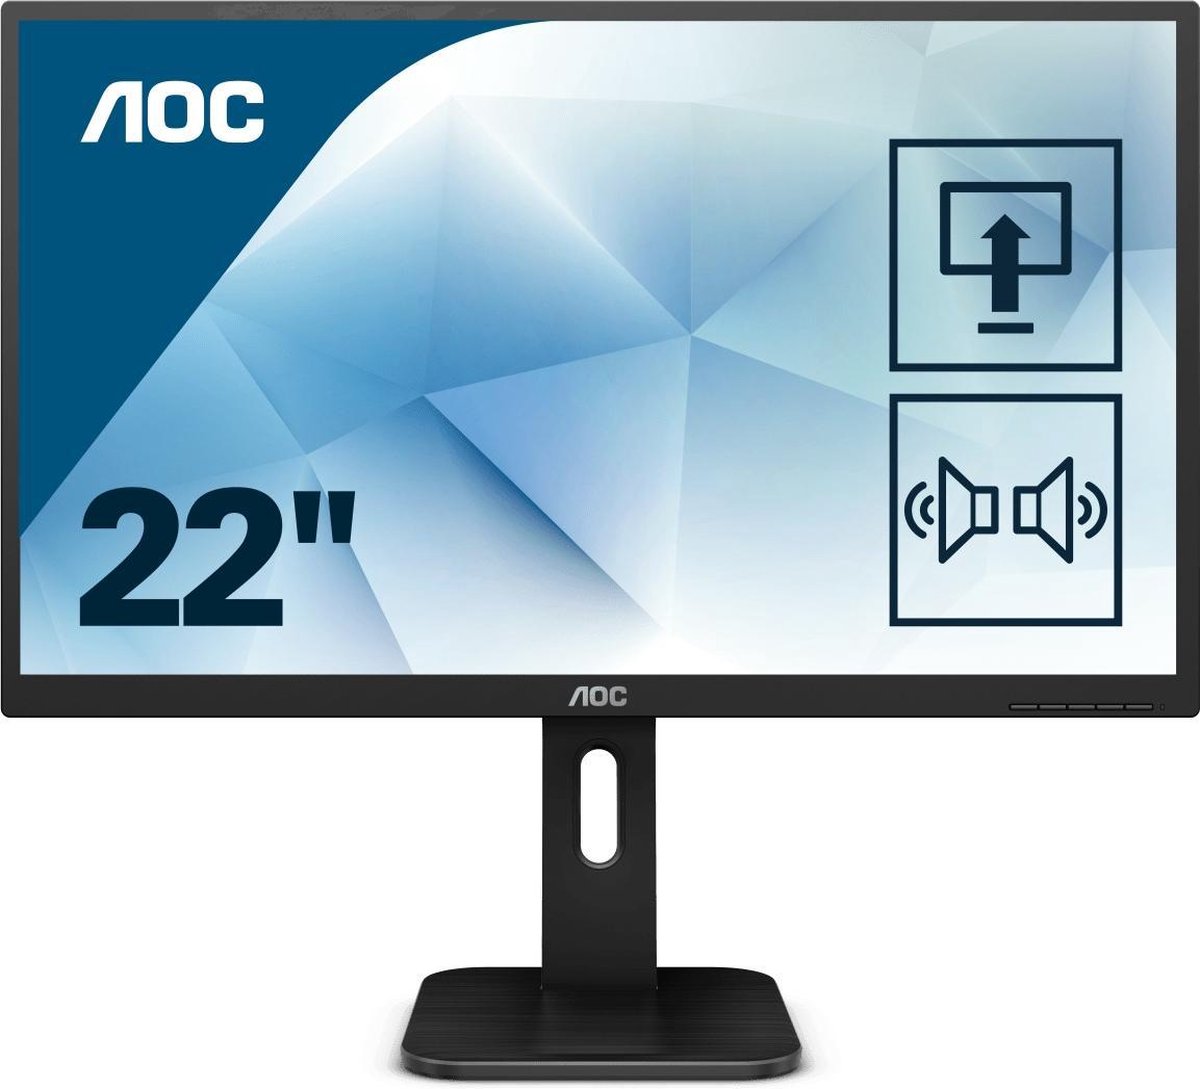 AOC Pro-line 22P1 computer monitor 54,6 cm (21.5